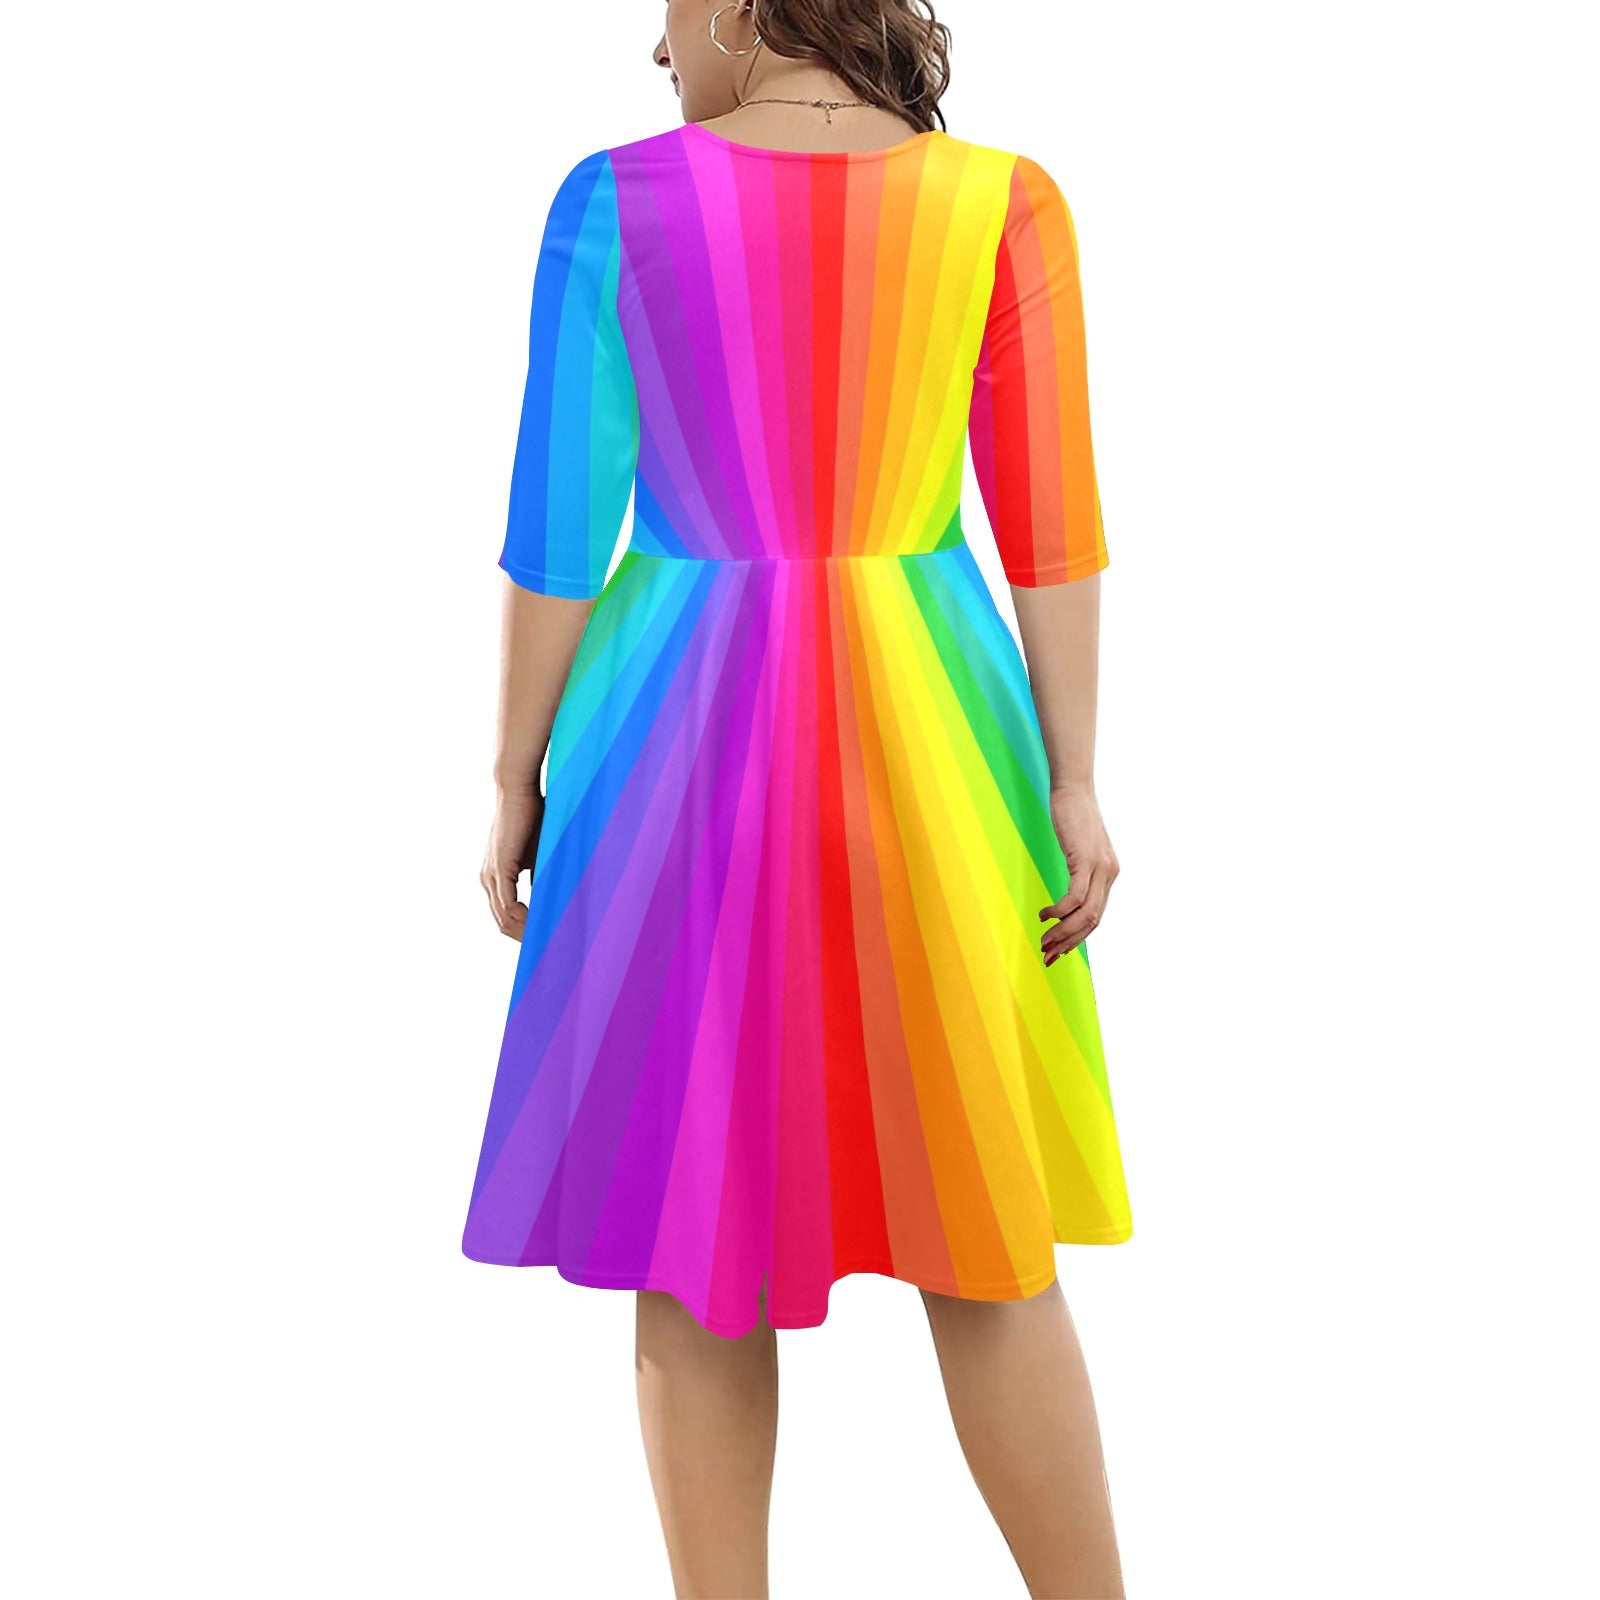 Rainbow balloon twister dress